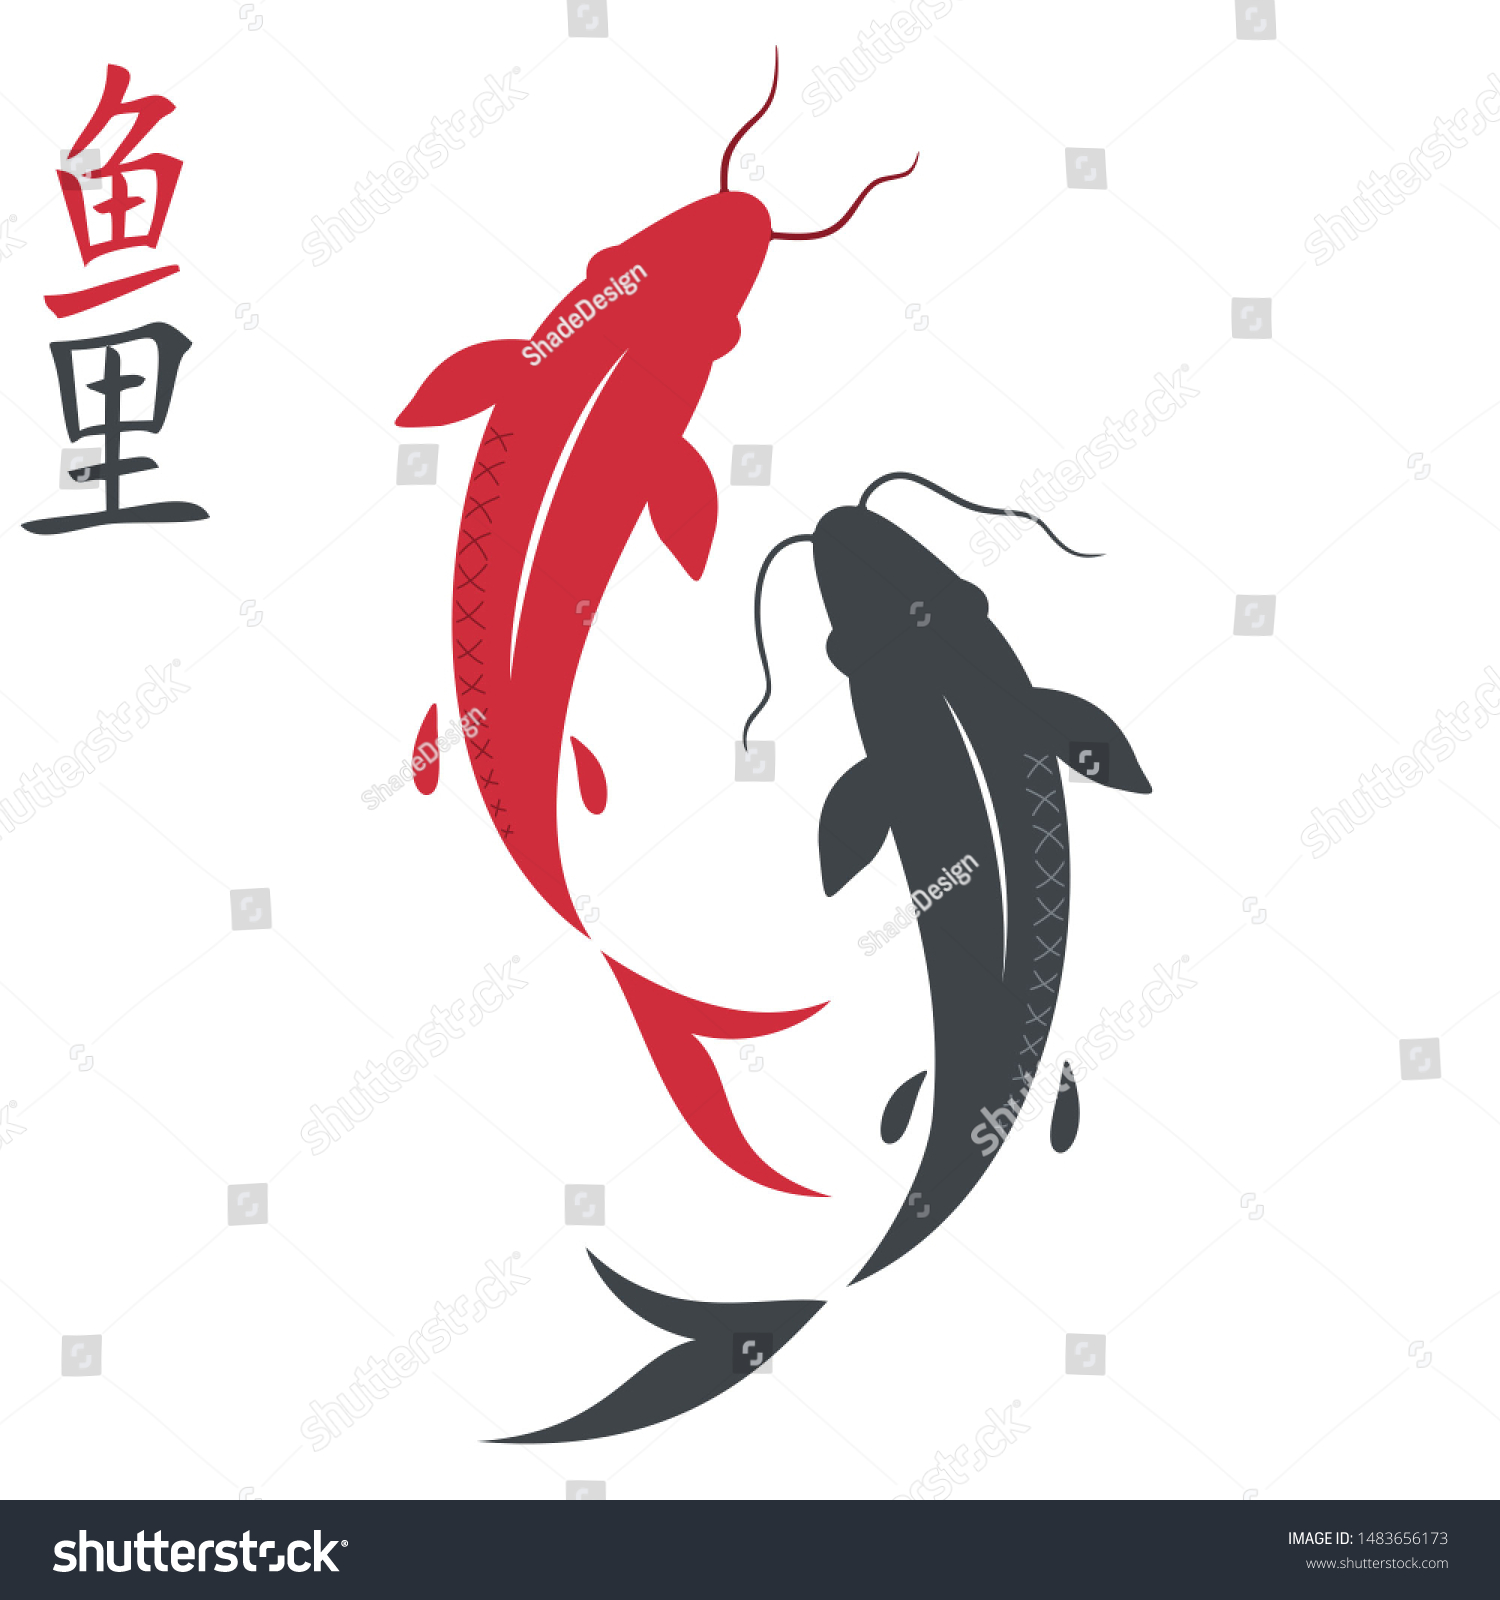 ベクター画像アイコン鯉魚 イラスト絵魚鯉 中国の鯉の絵 のイラスト素材